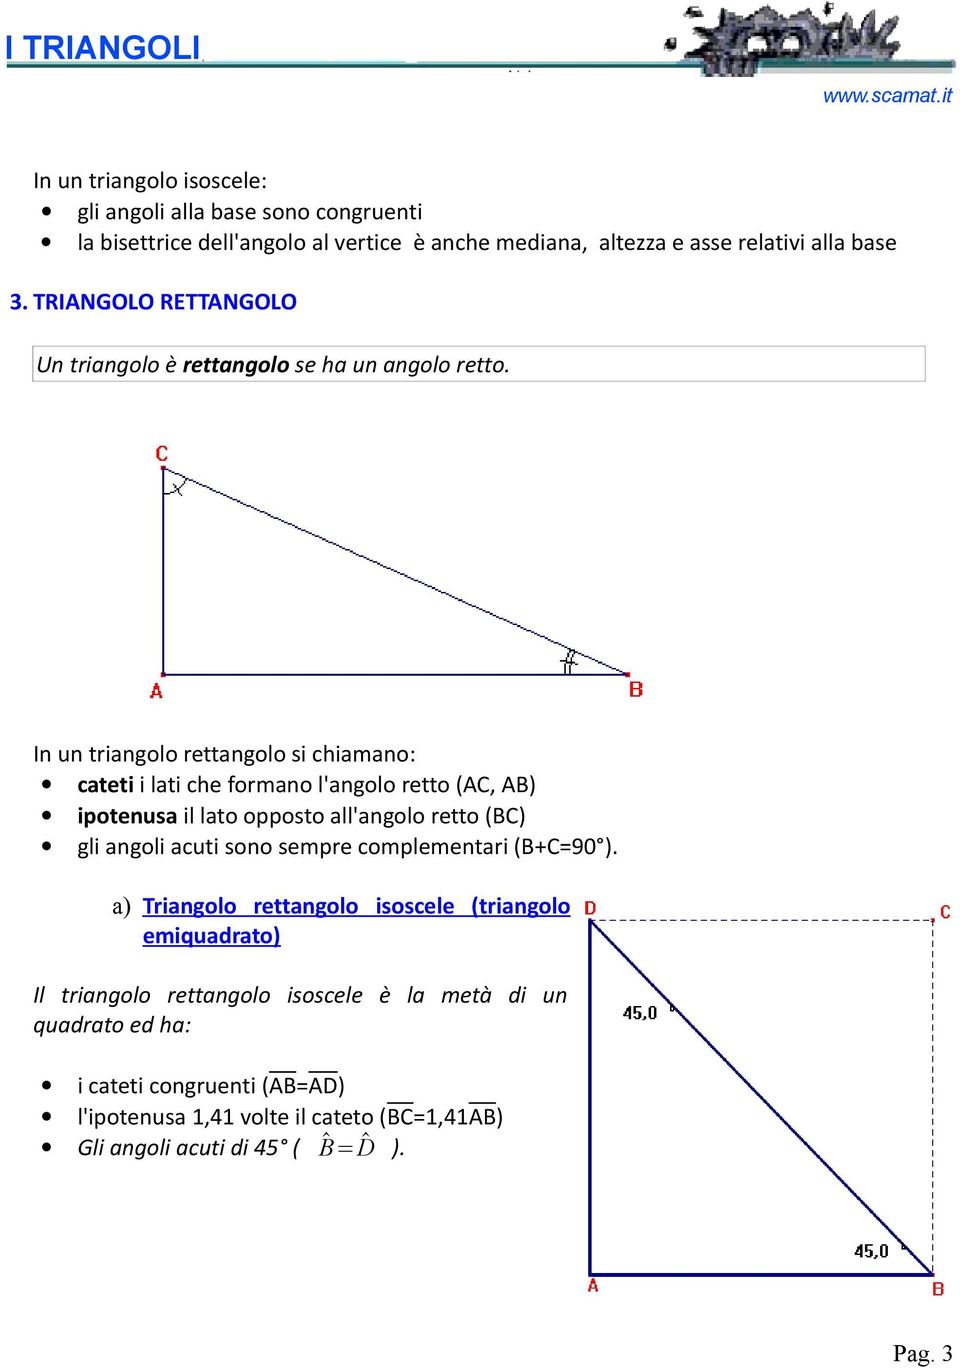 In un triangolo rettangolo si chiamano: cateti i lati che formano l'angolo retto (AC, AB) ipotenusa il lato opposto all'angolo retto (BC) gli angoli acuti sono